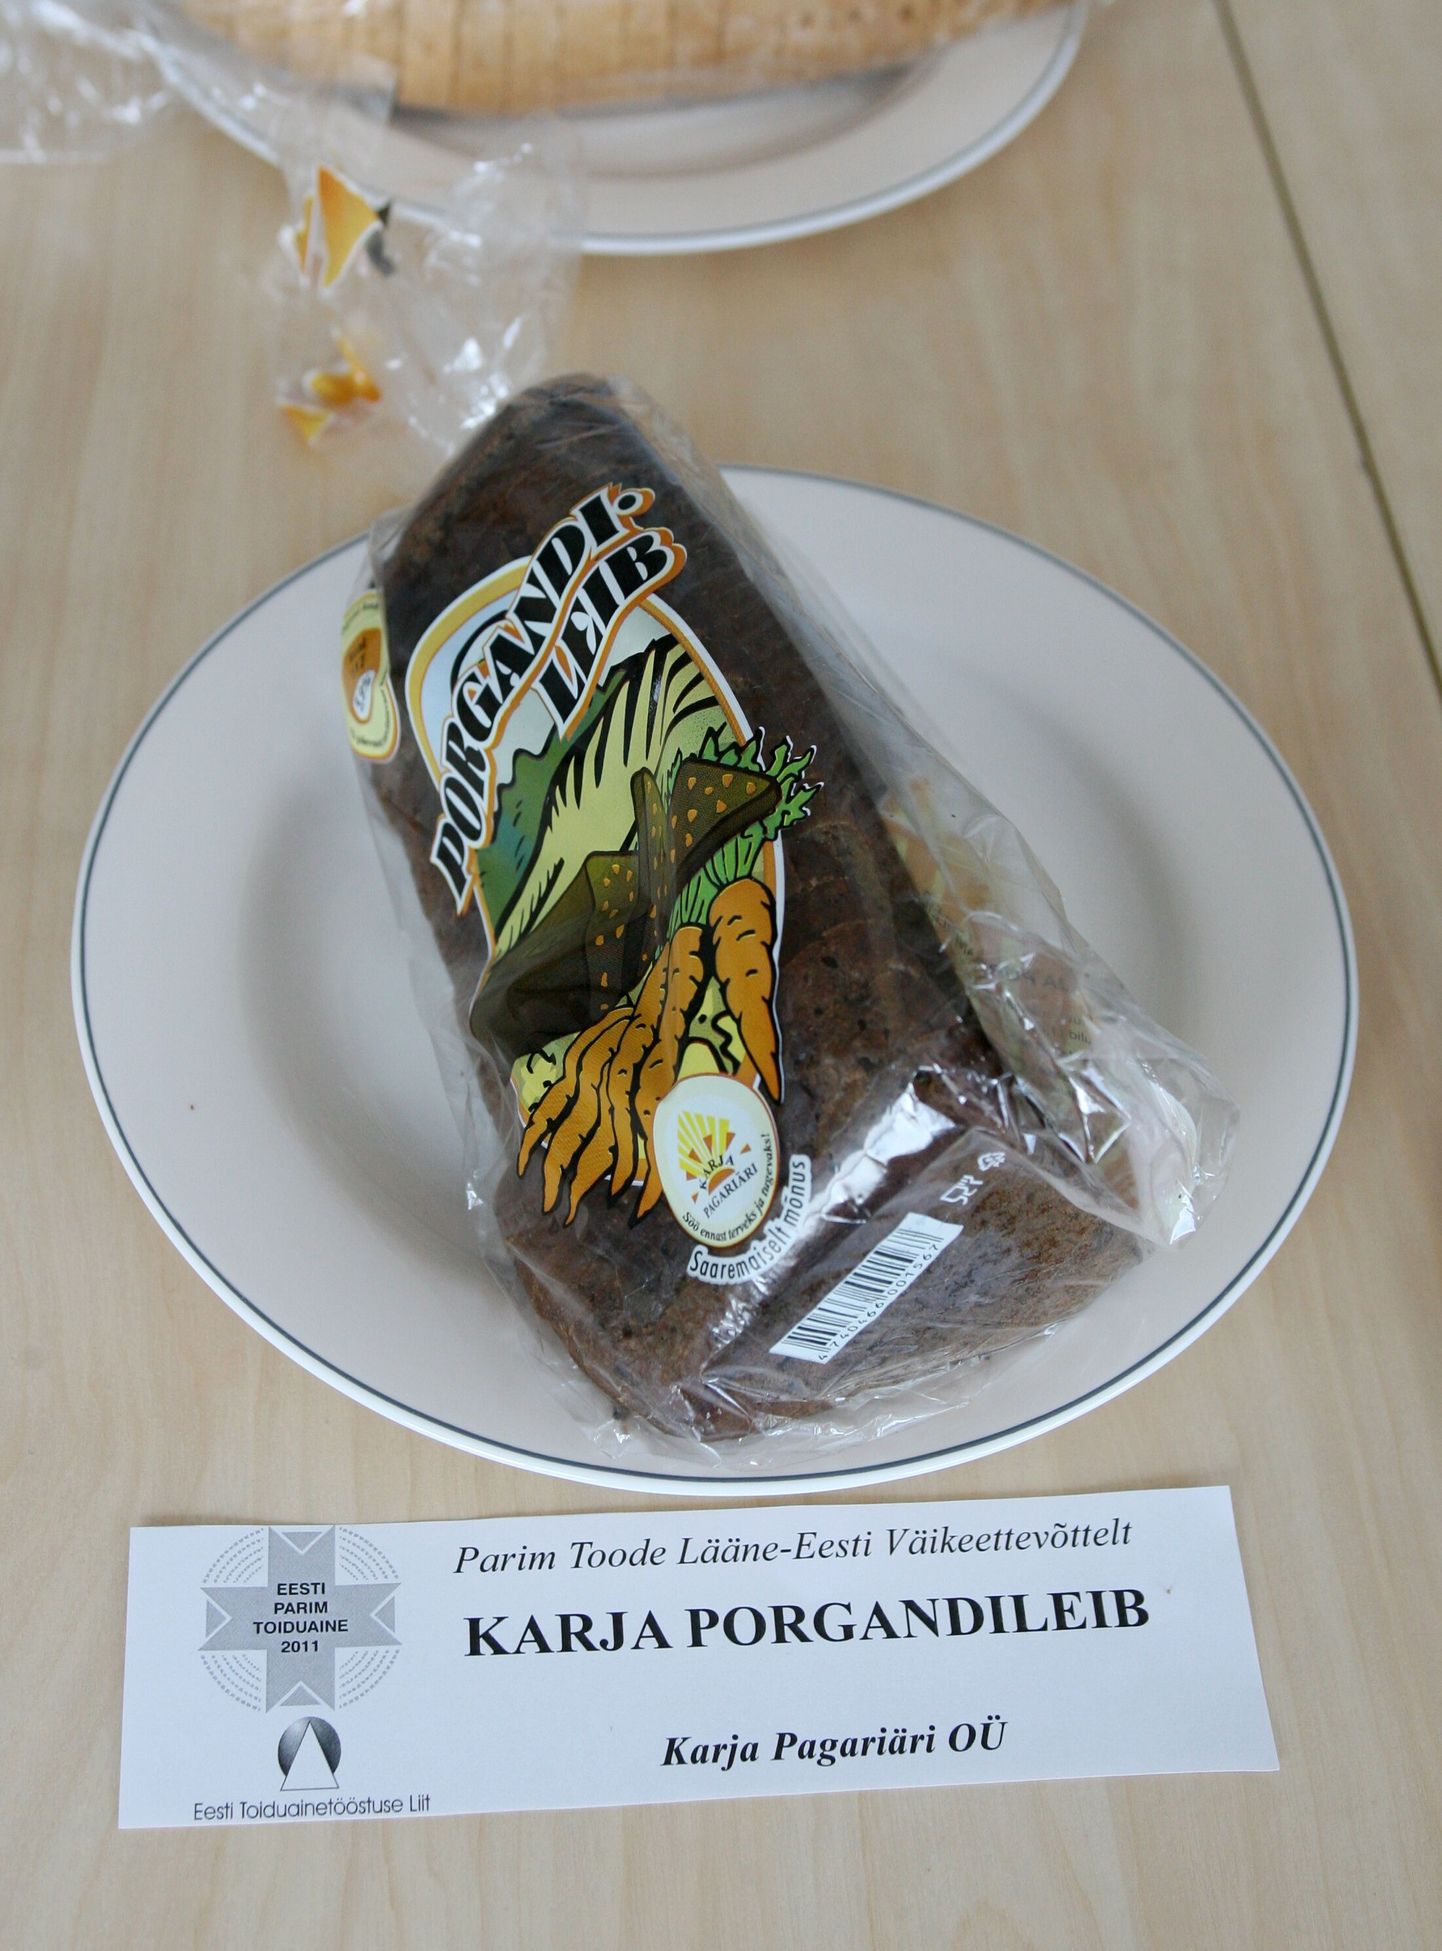 Karja Pagariäri Porgandileib parima Eesti toiduaine valimisel 2011.